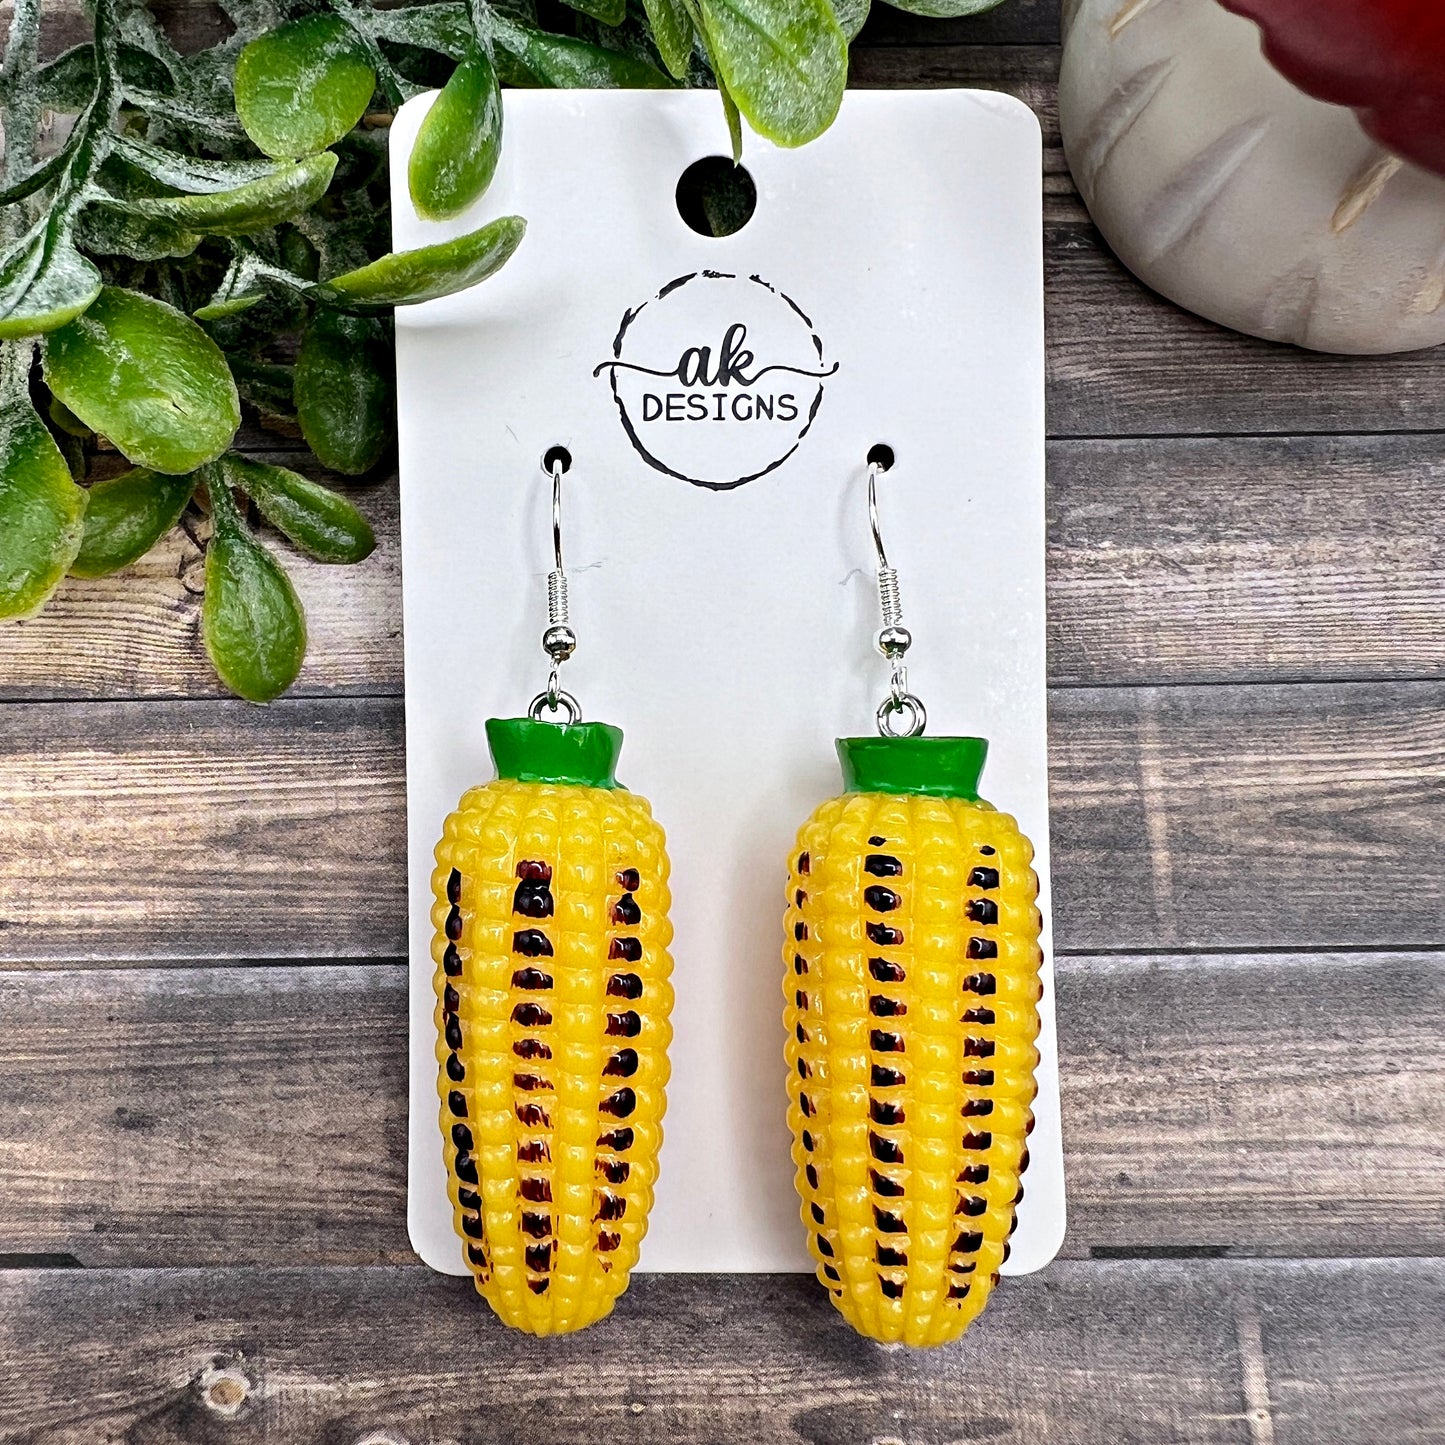 Grilled Sweet Corn Oversized Midwest Iowa Ohio Illinois Nebraska Veggie Earrings  Earrings, Hypoallergenic Gift - Clearance